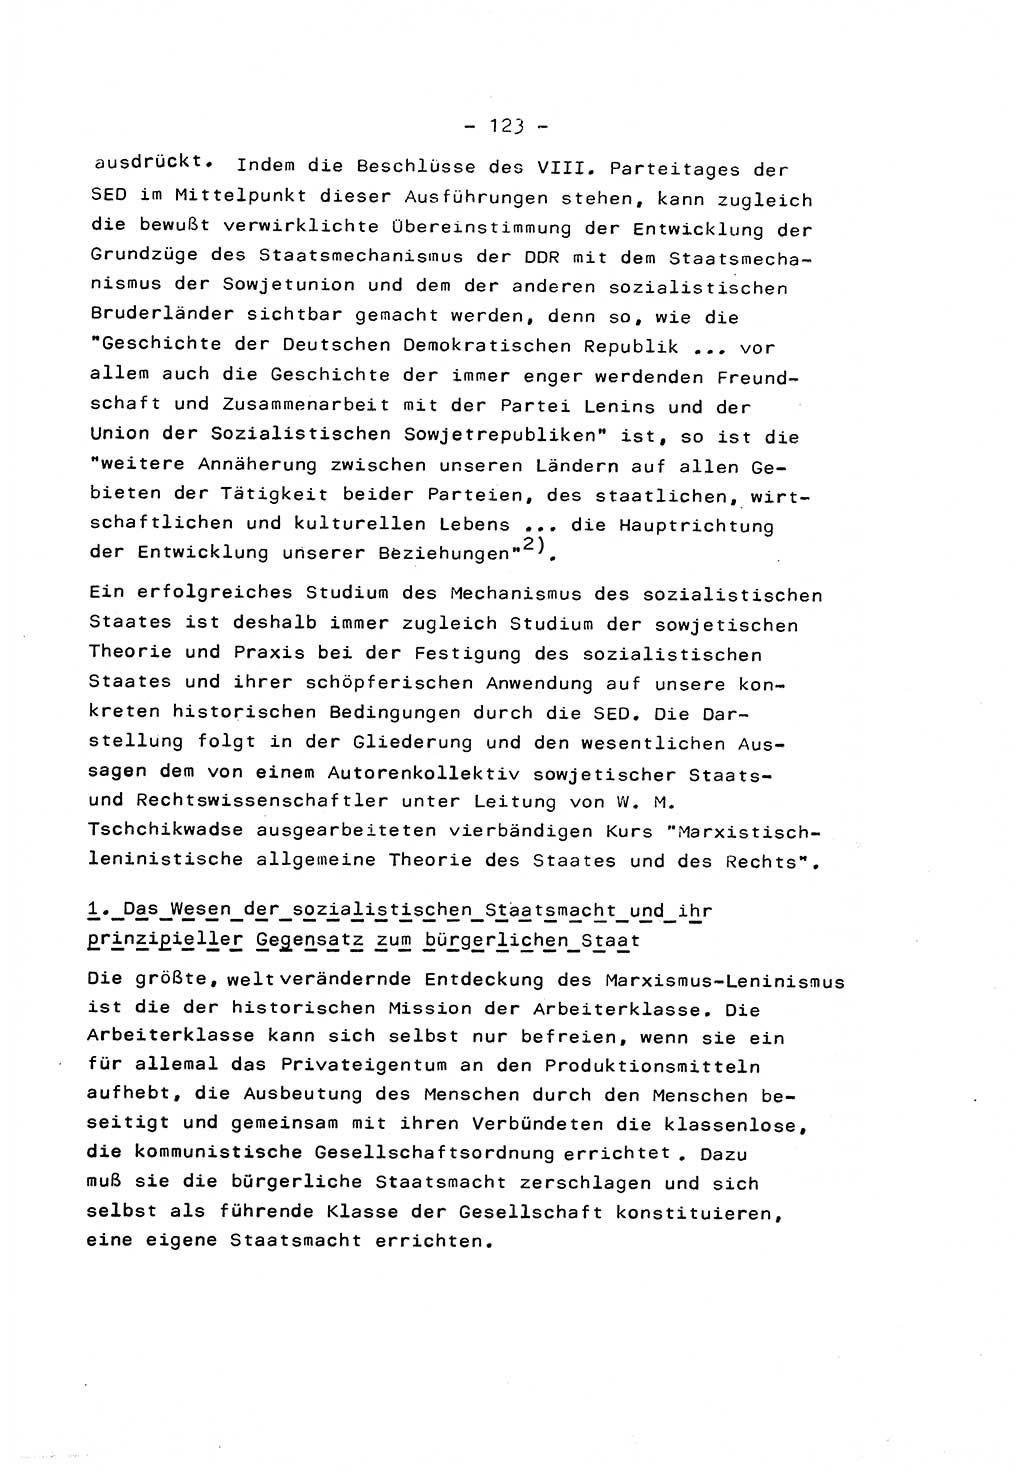 Marxistisch-leninistische Staats- und Rechtstheorie [Deutsche Demokratische Republik (DDR)] 1975, Seite 123 (ML St.-R.-Th. DDR 1975, S. 123)